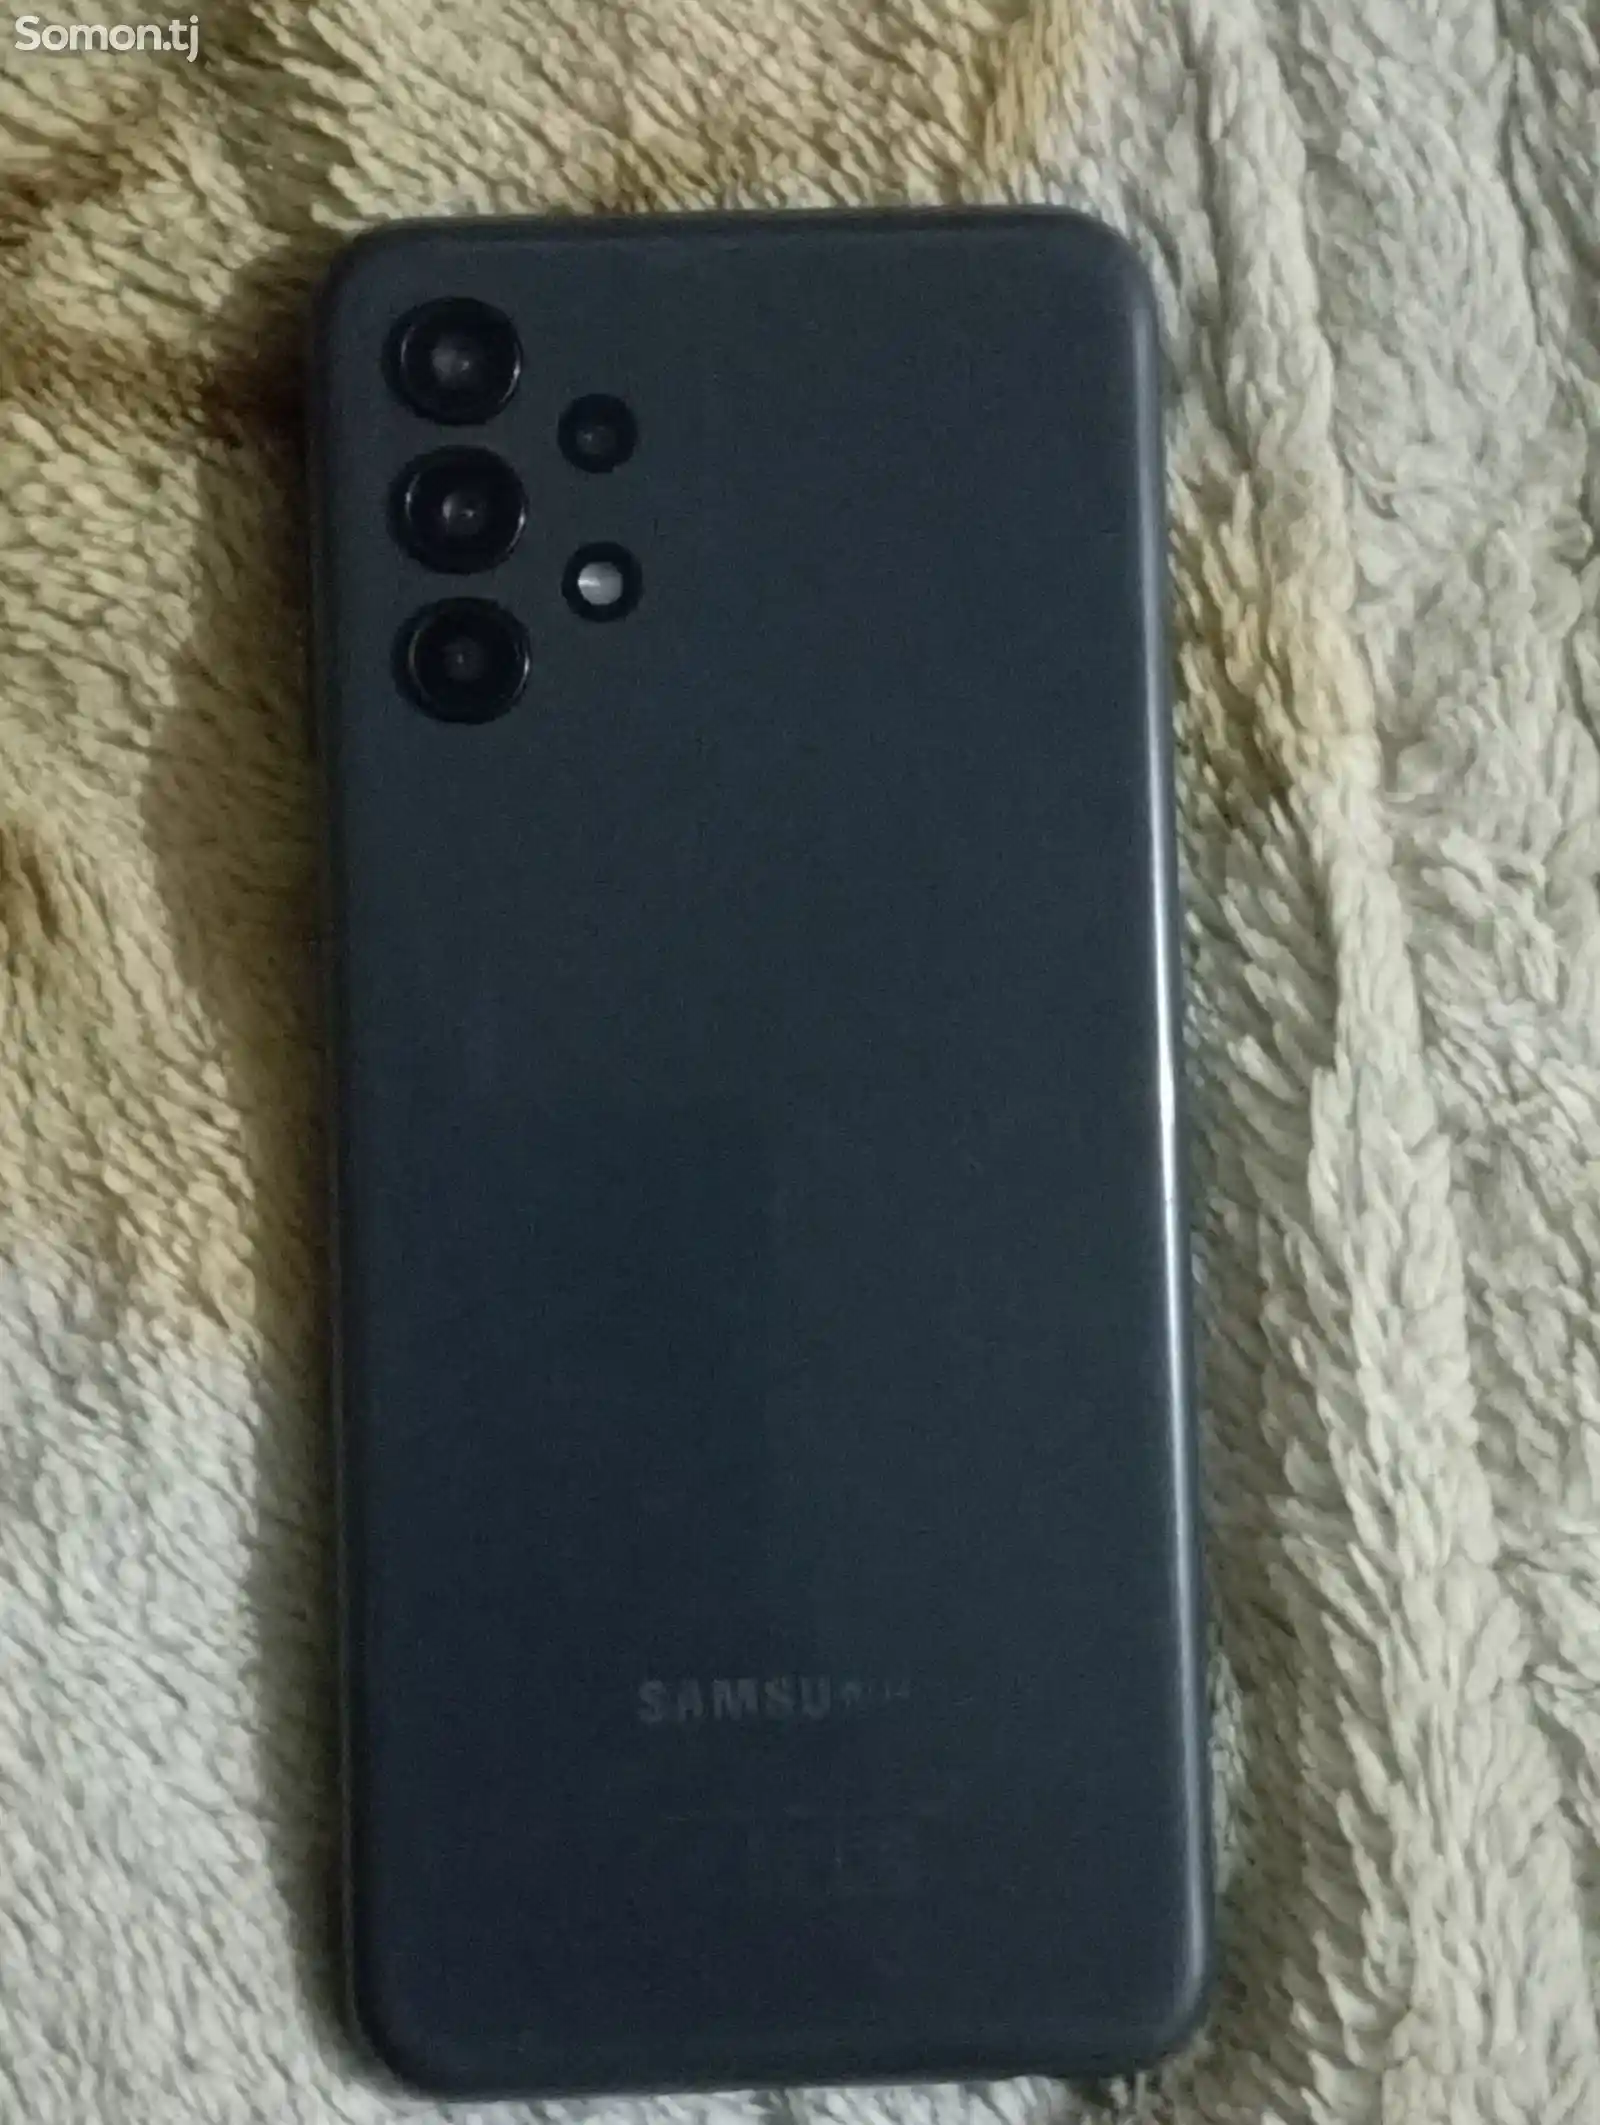 Samsung Galaxy A13-3